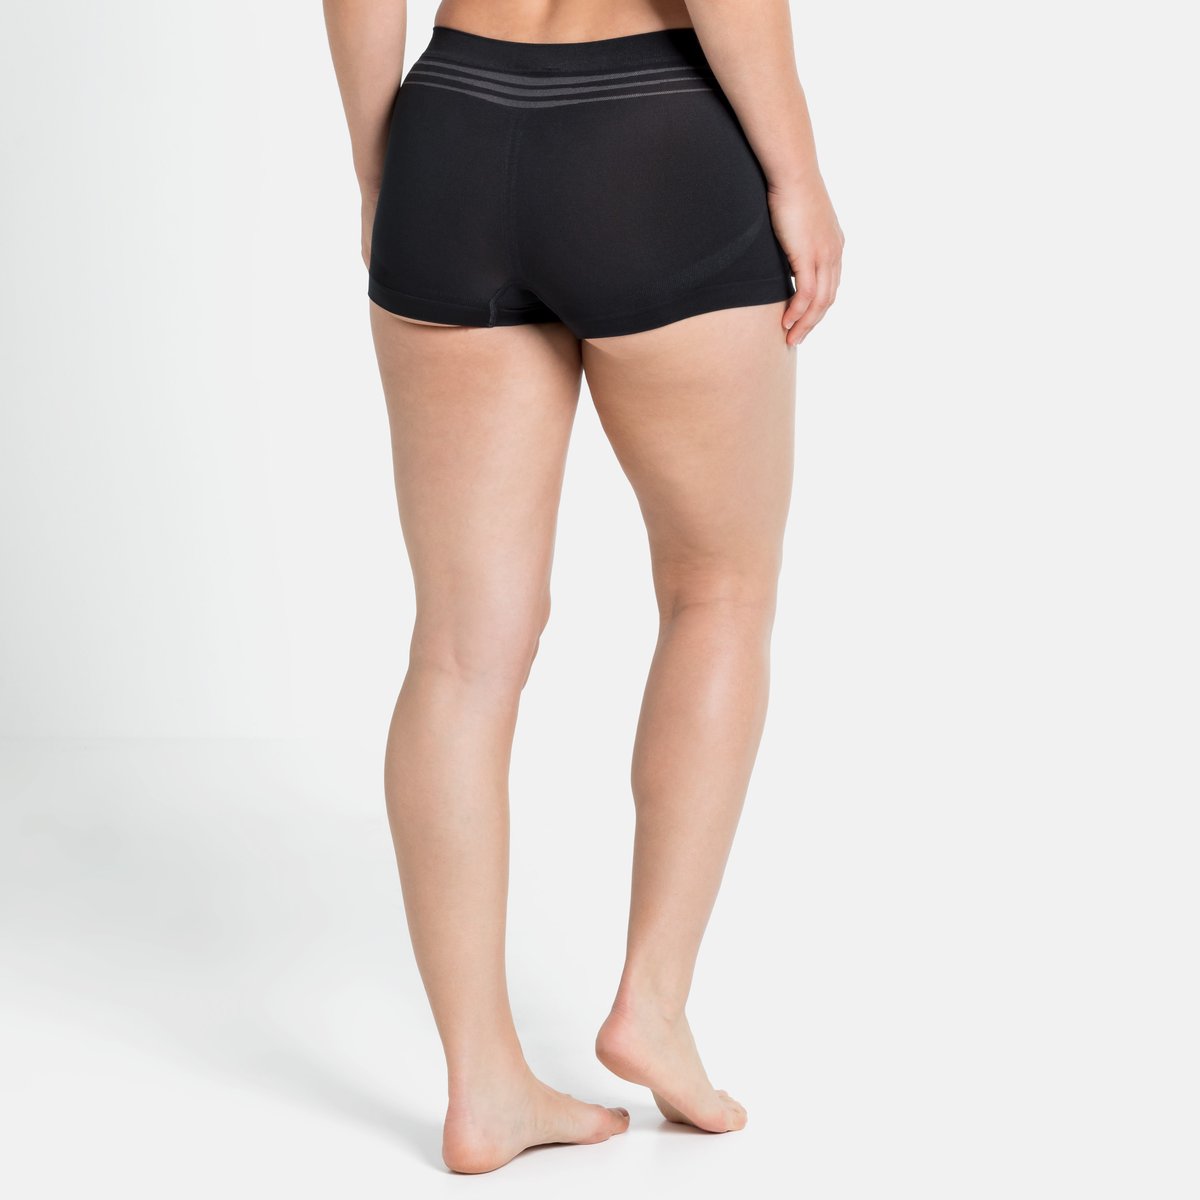 Odlo Performance X-Light - Underwear - Women's